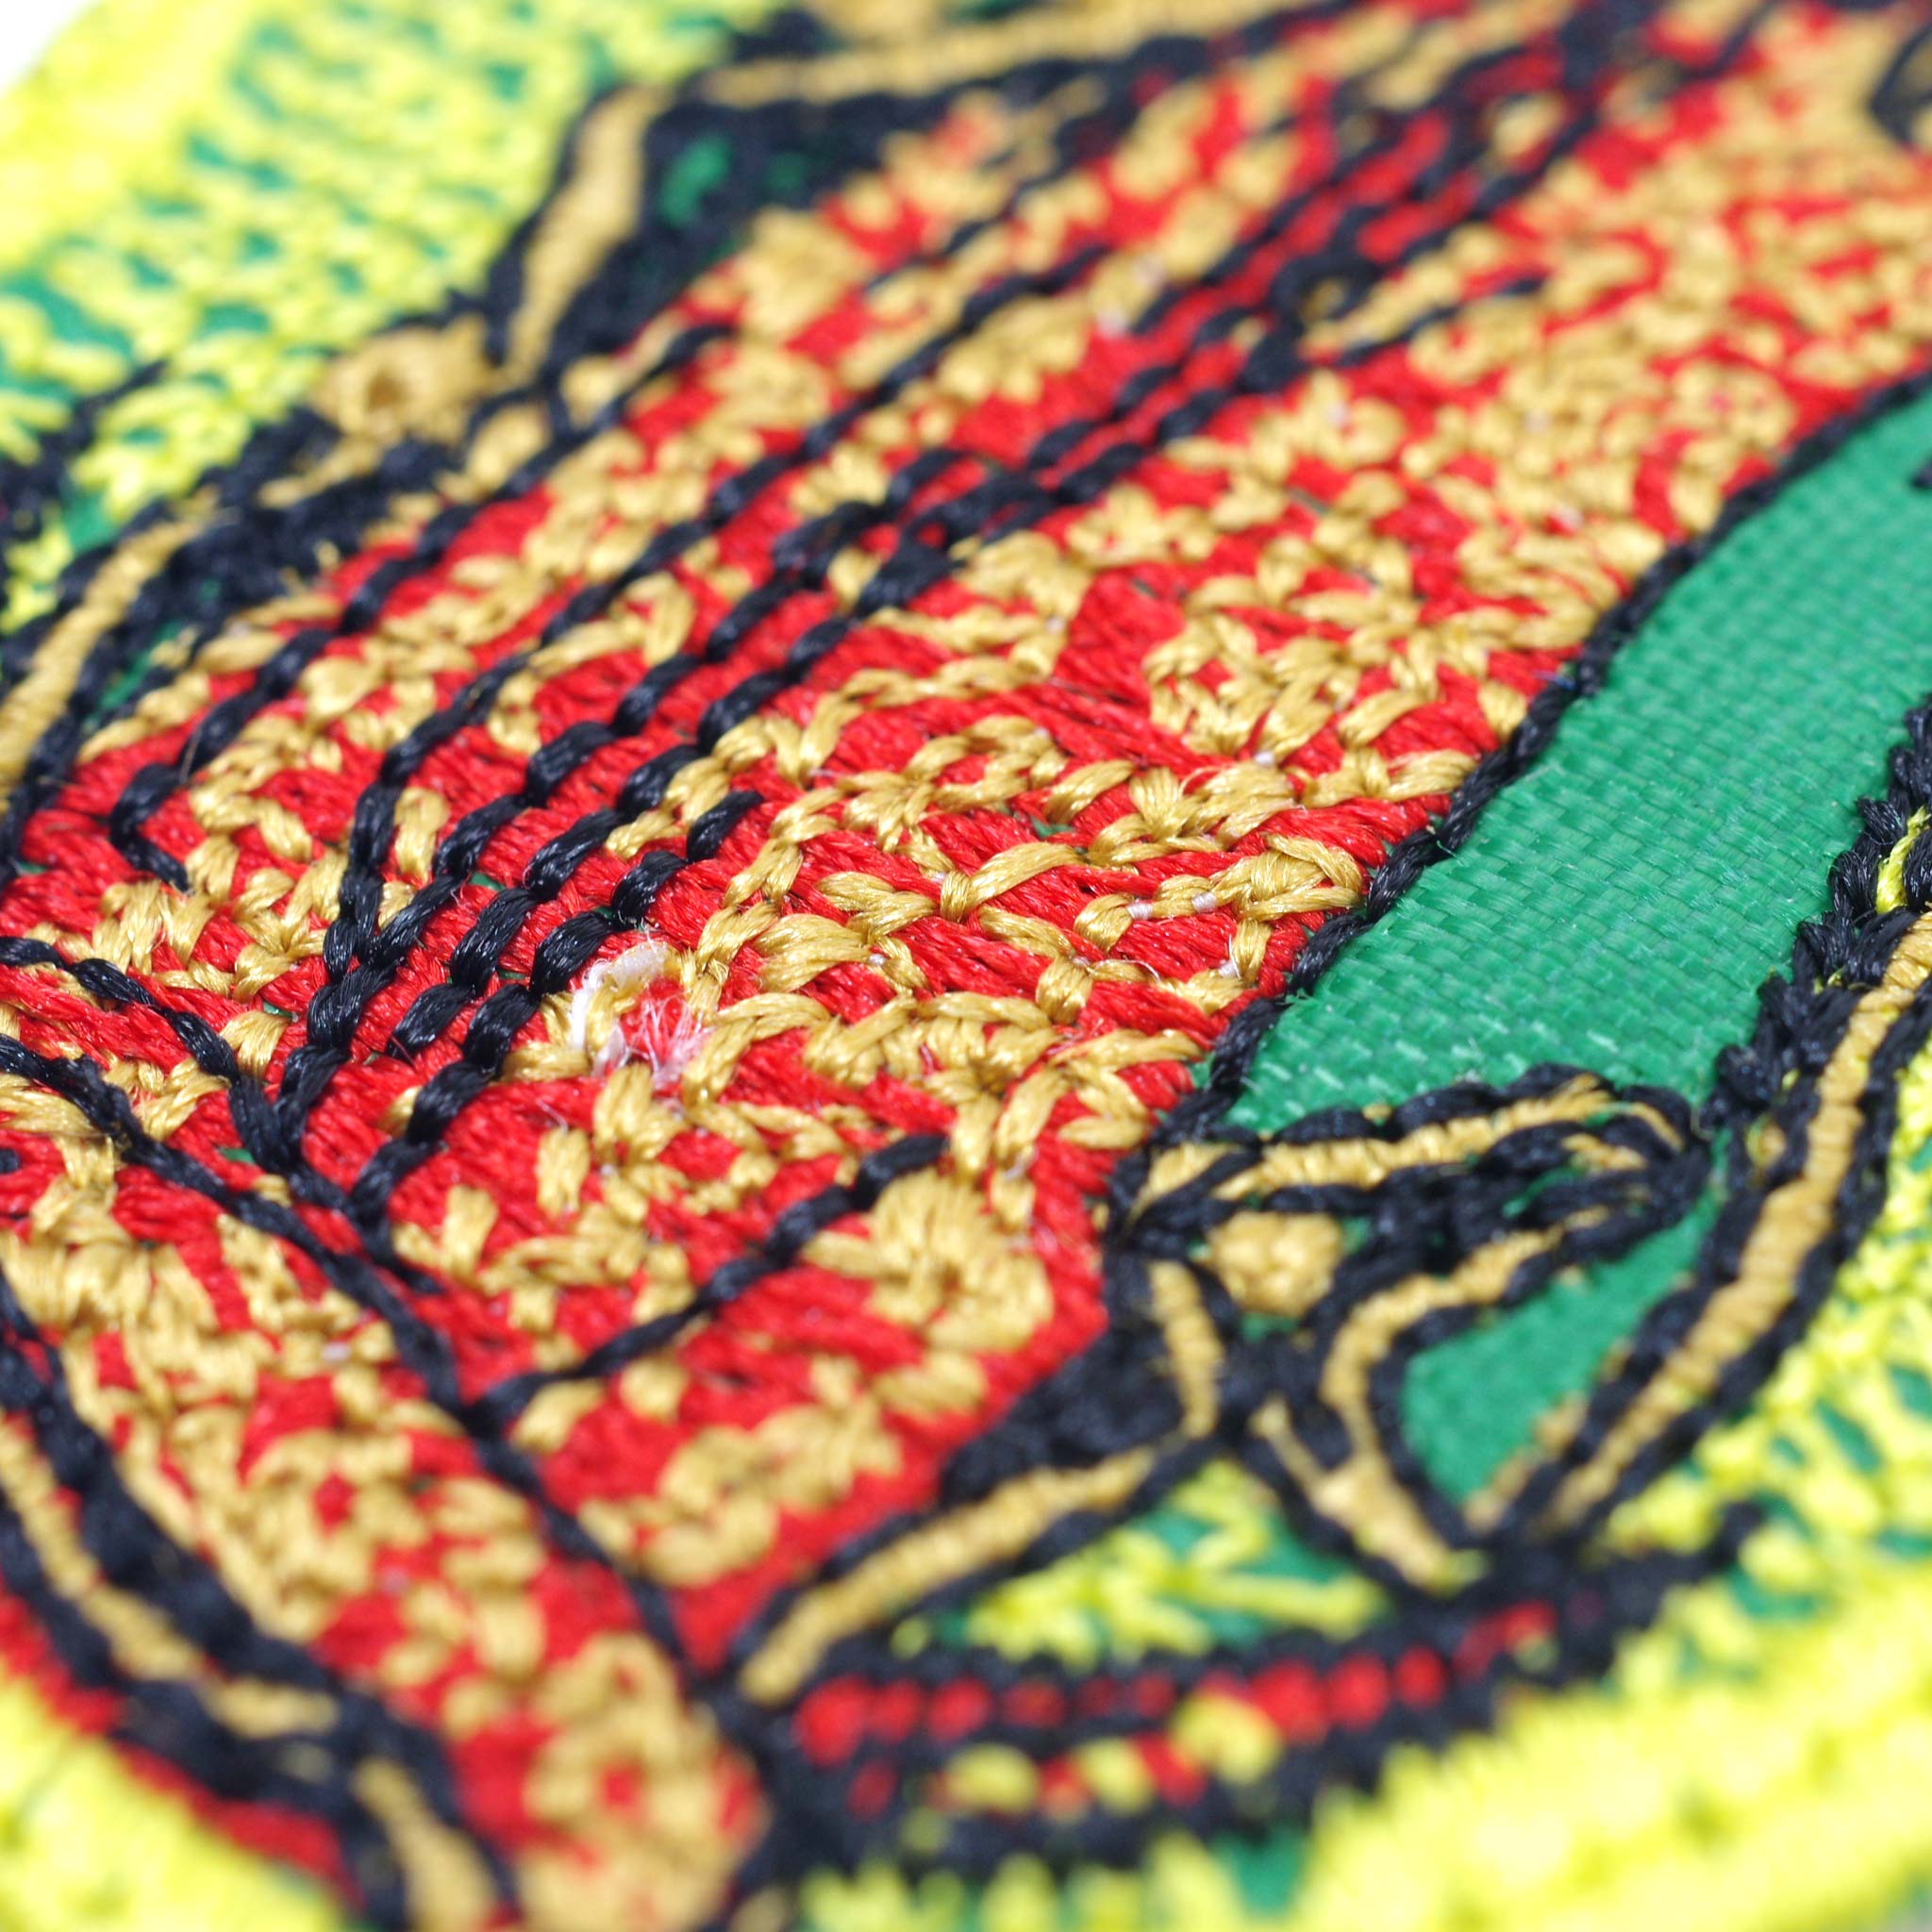 “ワッペン,縫い付け,刺繍,刺繍ワッペン,メキシコ,メキシコ雑貨,メキシコ雑貨PAD”